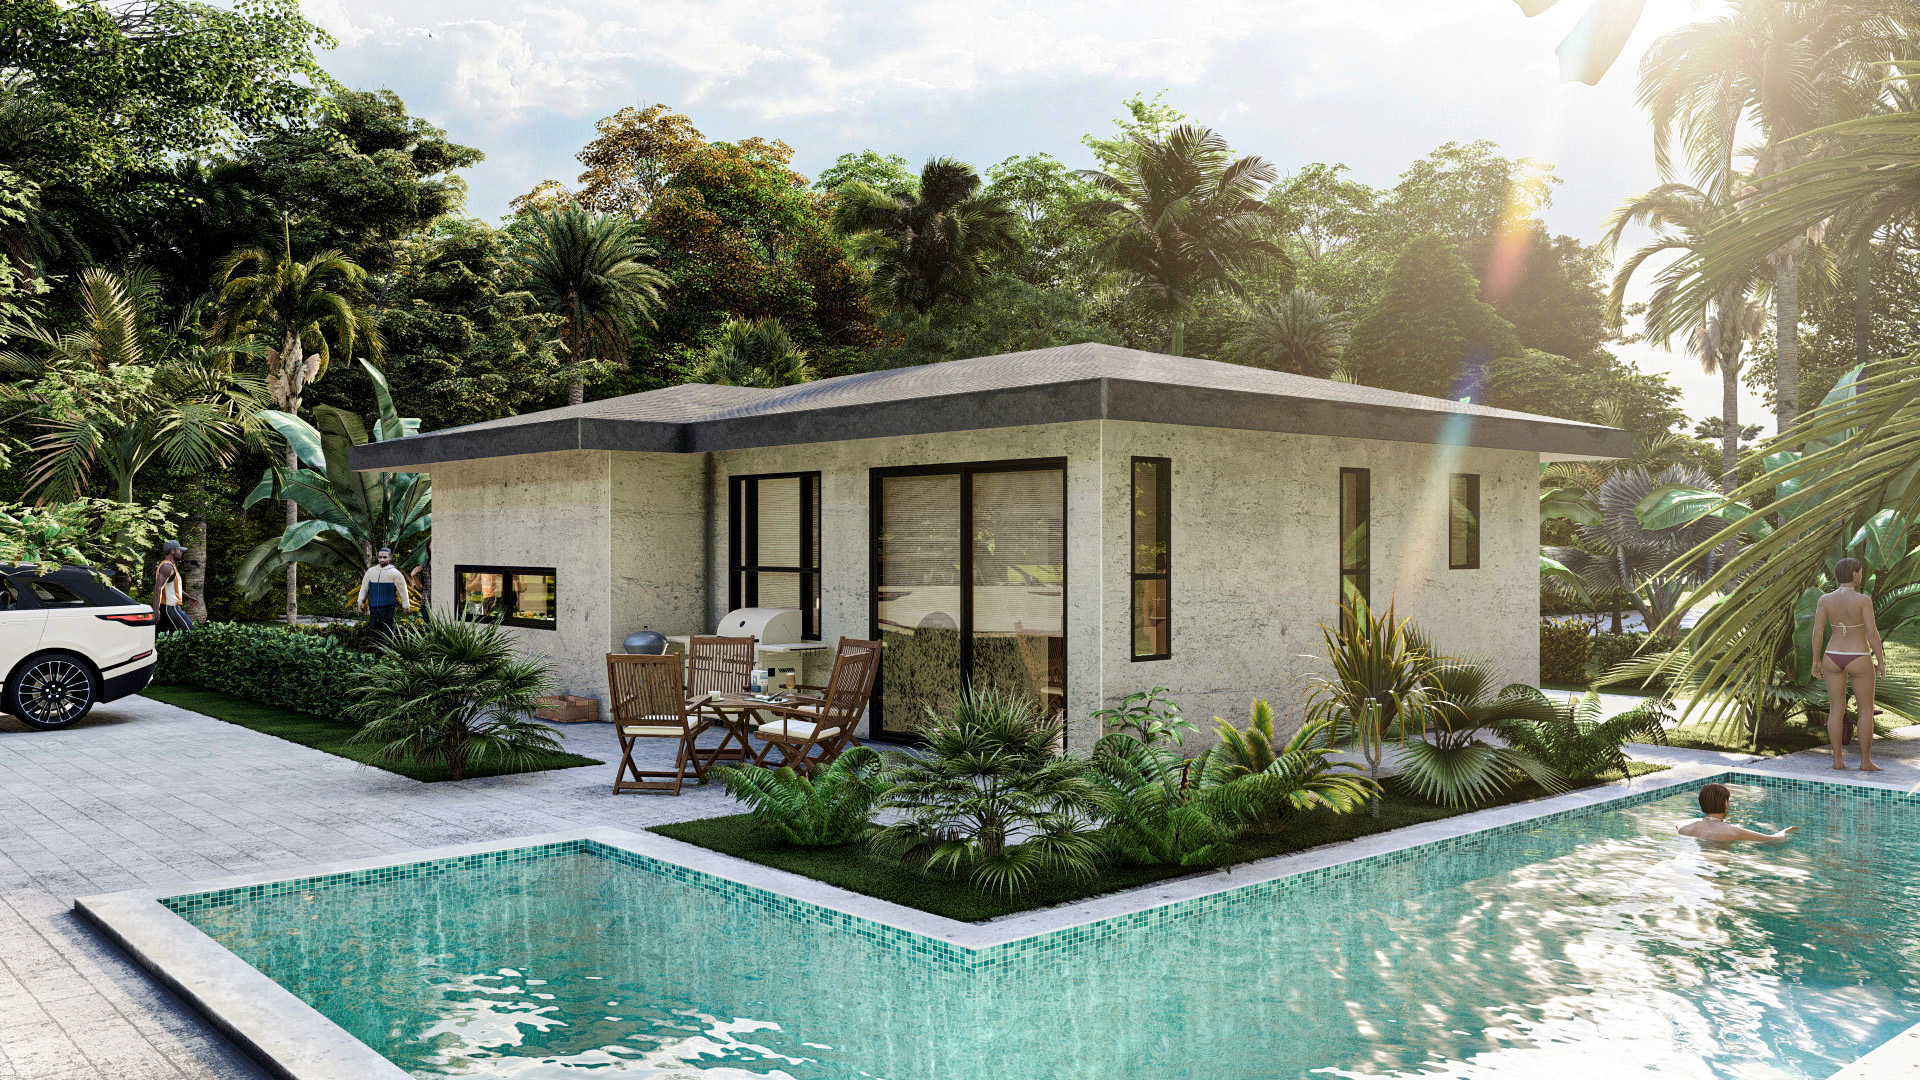 Authentic Homes for sale Costa Rica | Real estate - Bosque del pacifico